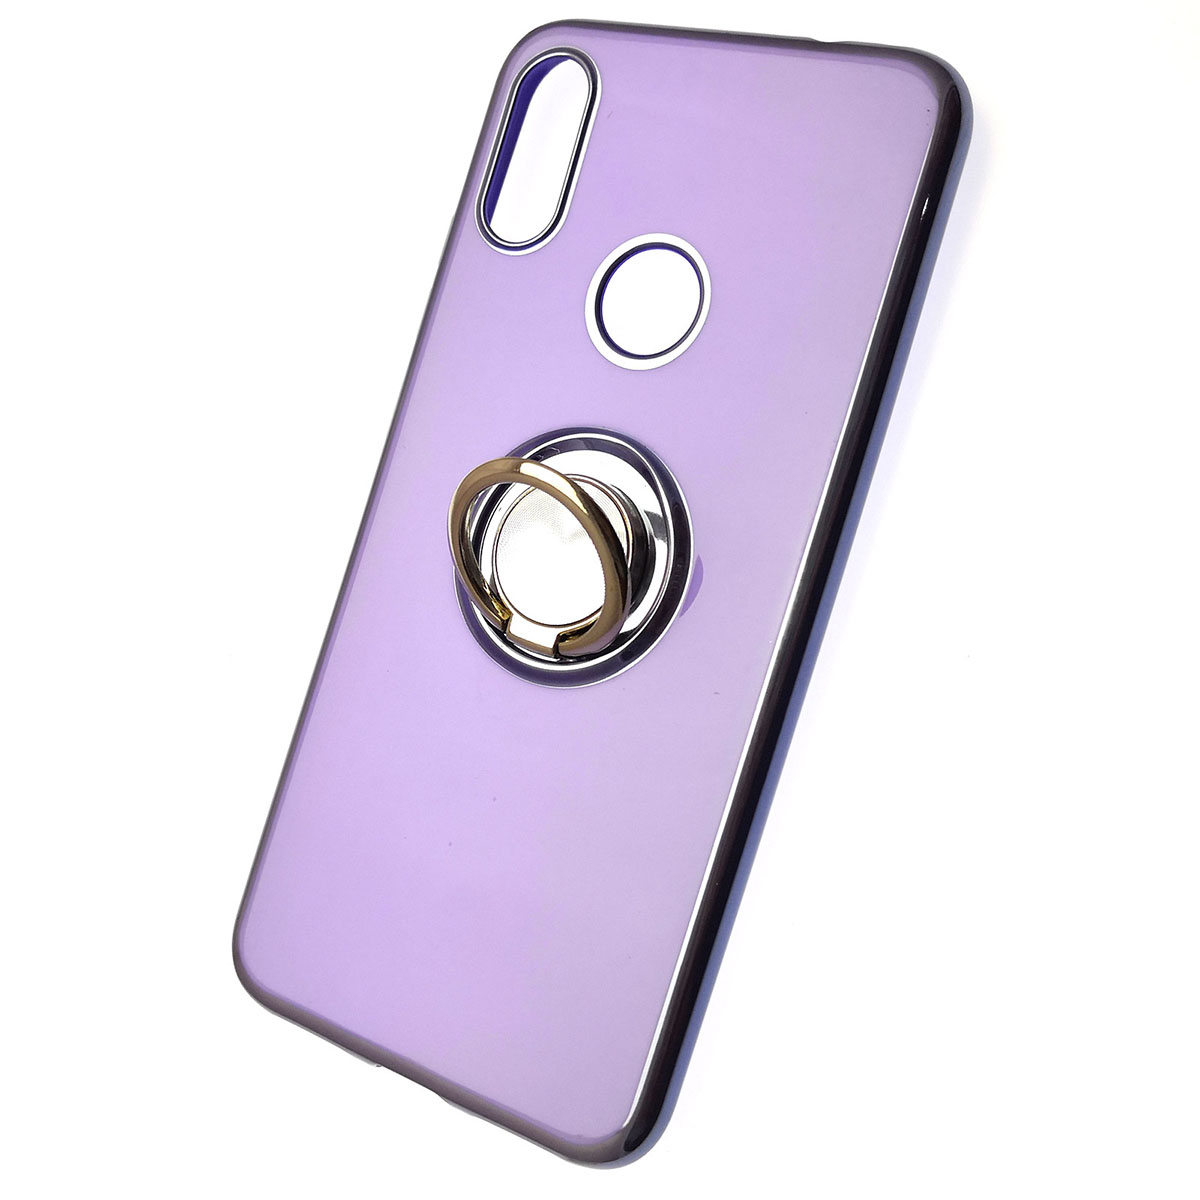 Чехол накладка для XIAOMI Redmi Note 7, Note 7 Pro, силикон, кольцо держатель, цвет фиолетовый.